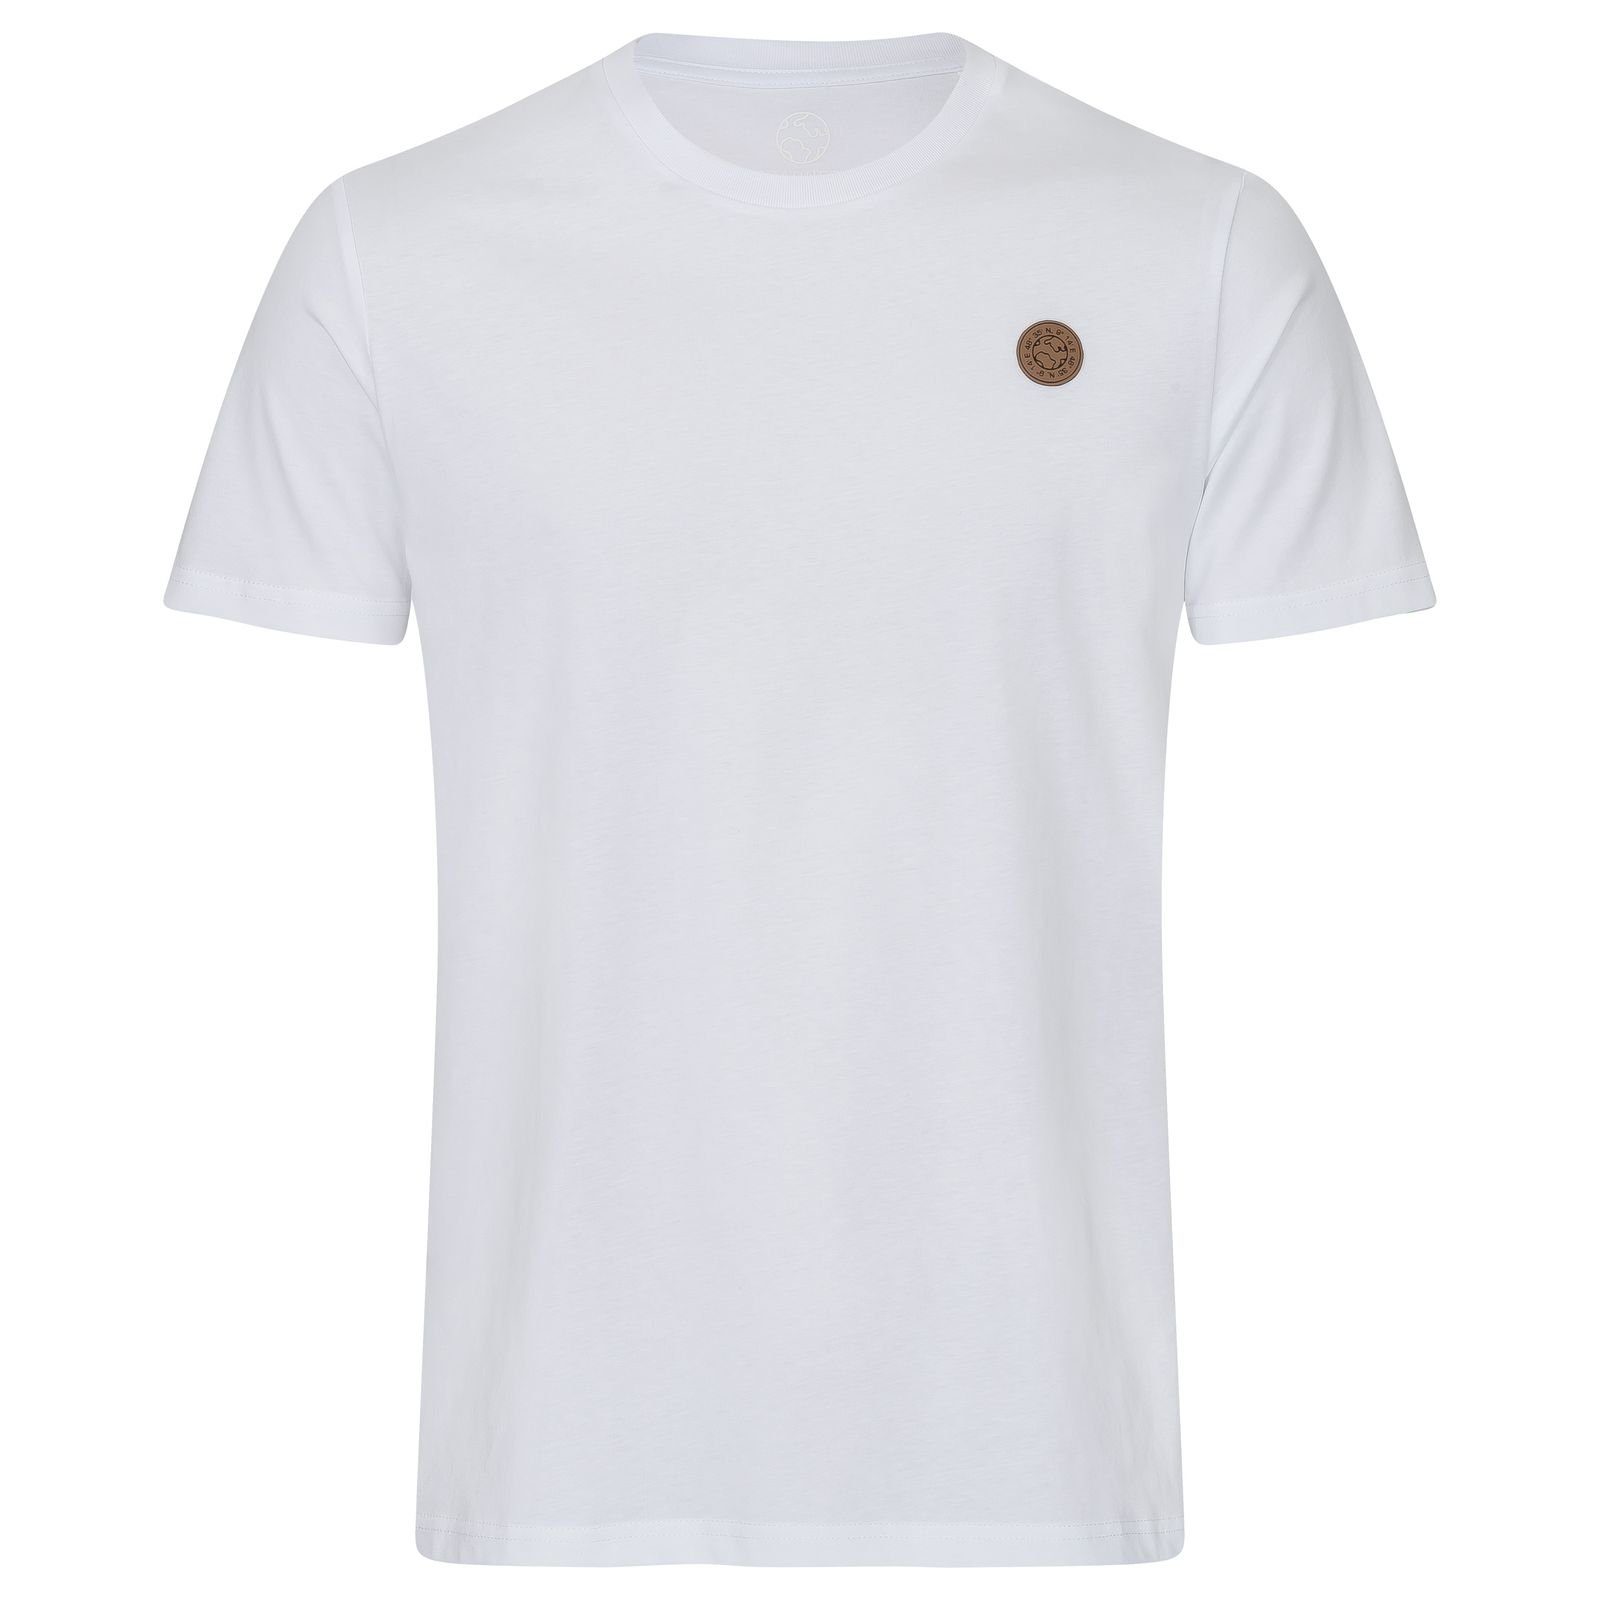 Gradnetz T-Shirt basic leather unisex 100% Biobaumwolle nachhaltig & fair weiß | T-Shirts